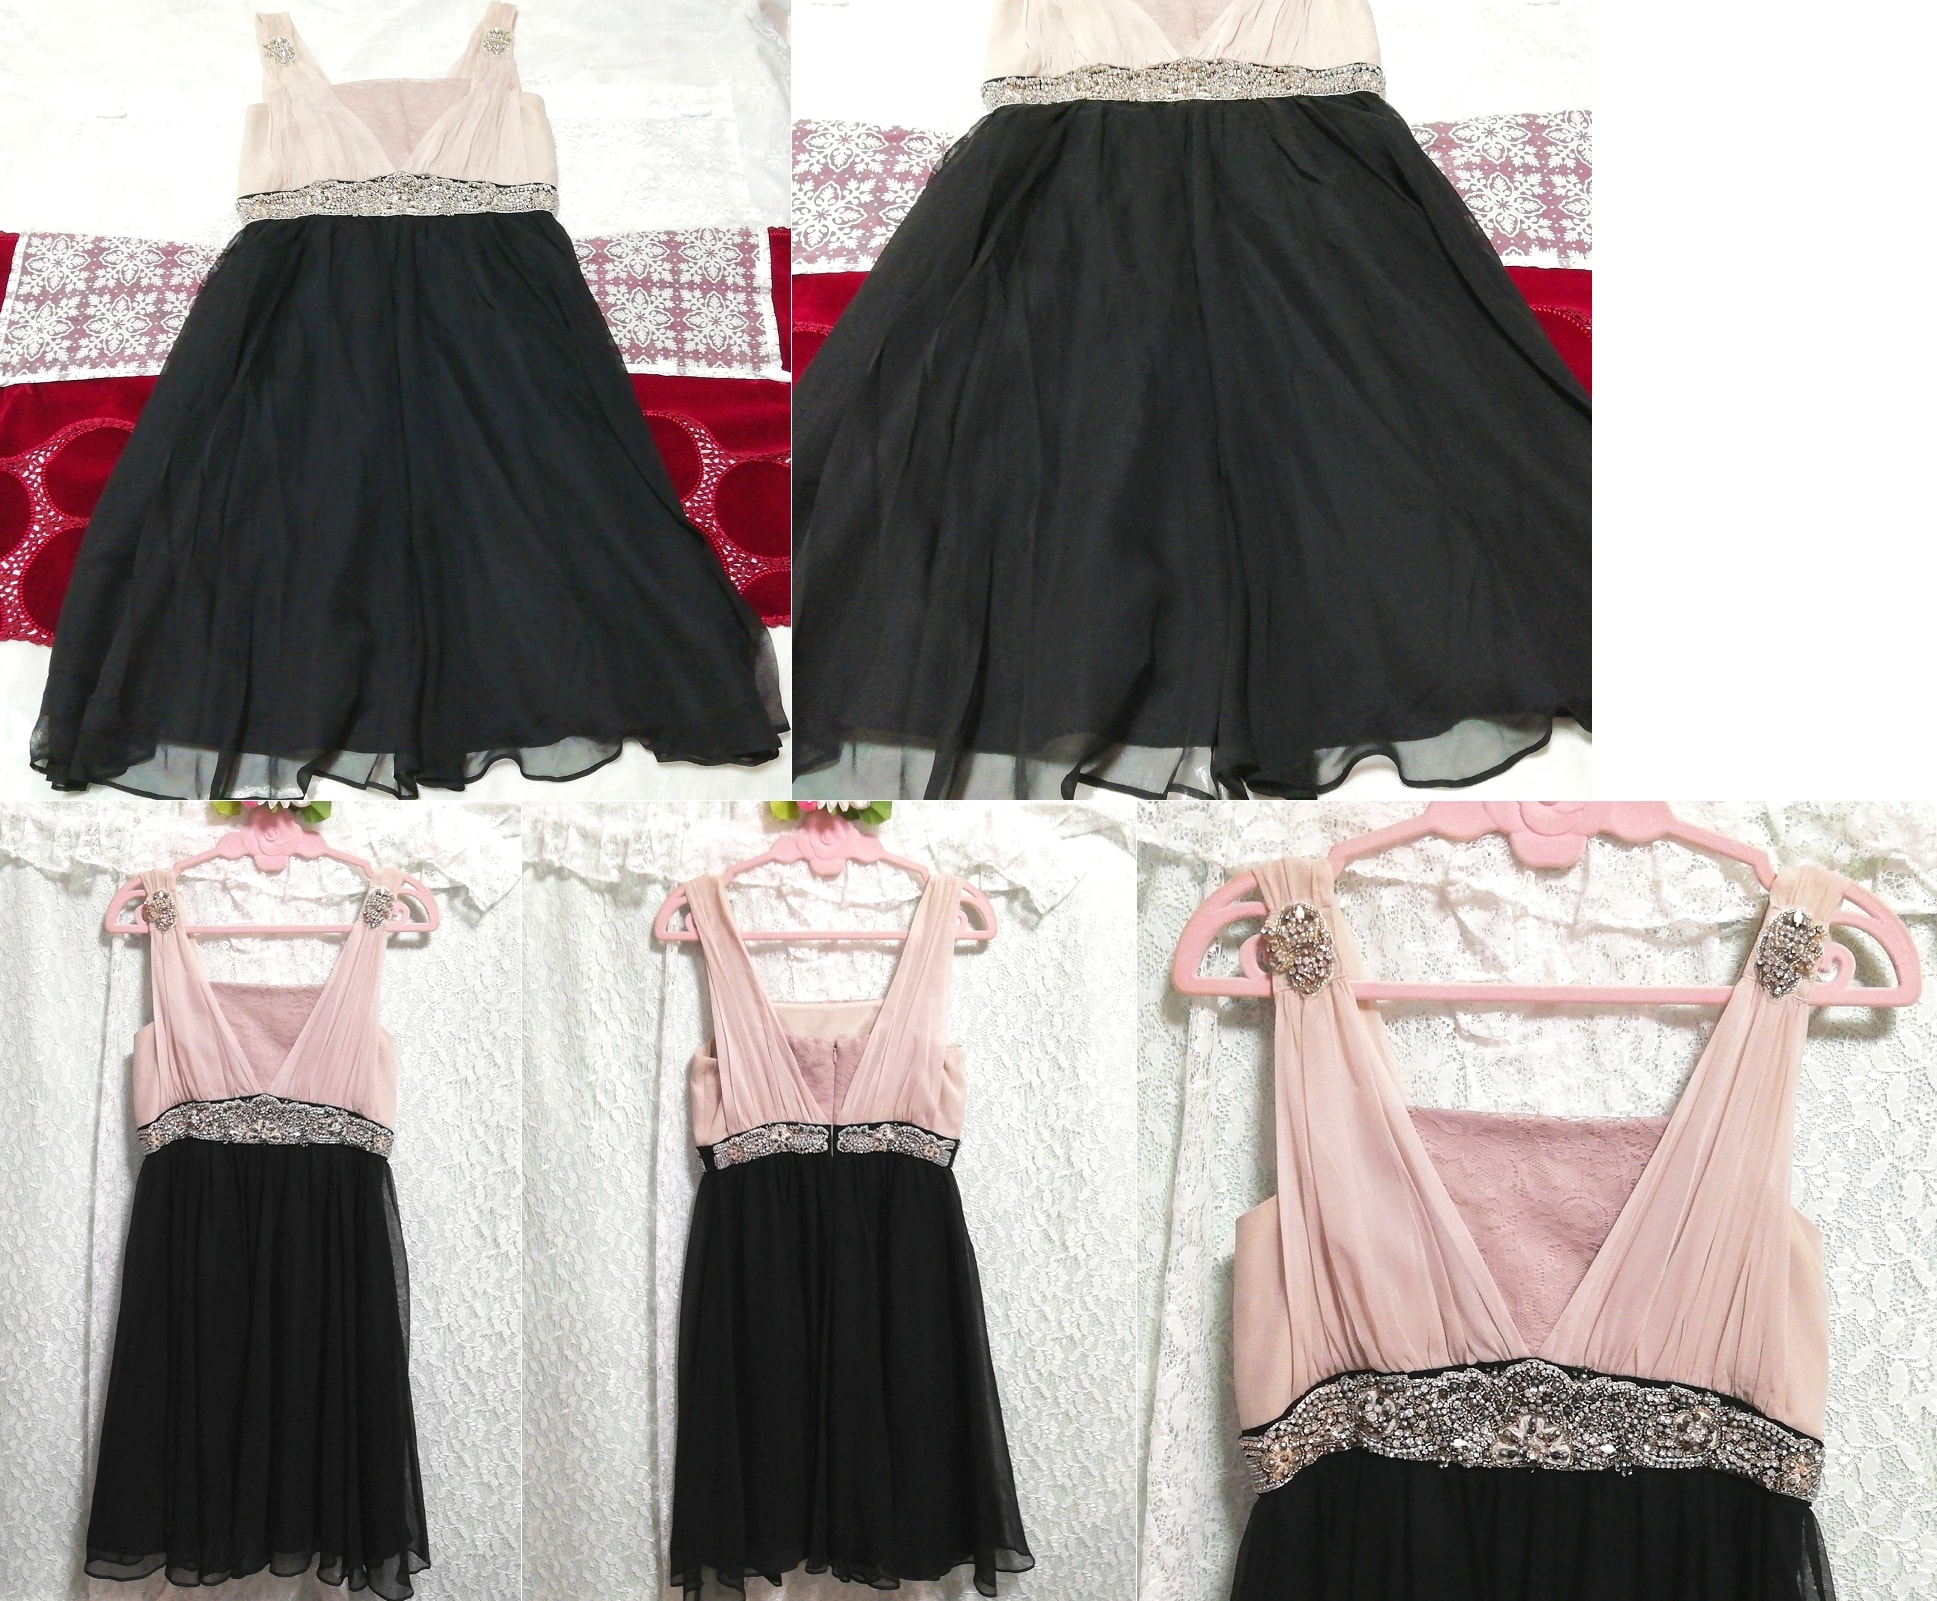 Bijoux en mousseline de soie rose, jupe noire, robe de nuit de luxe en soie, mode, mode féminine, vêtement de nuit, pyjamas